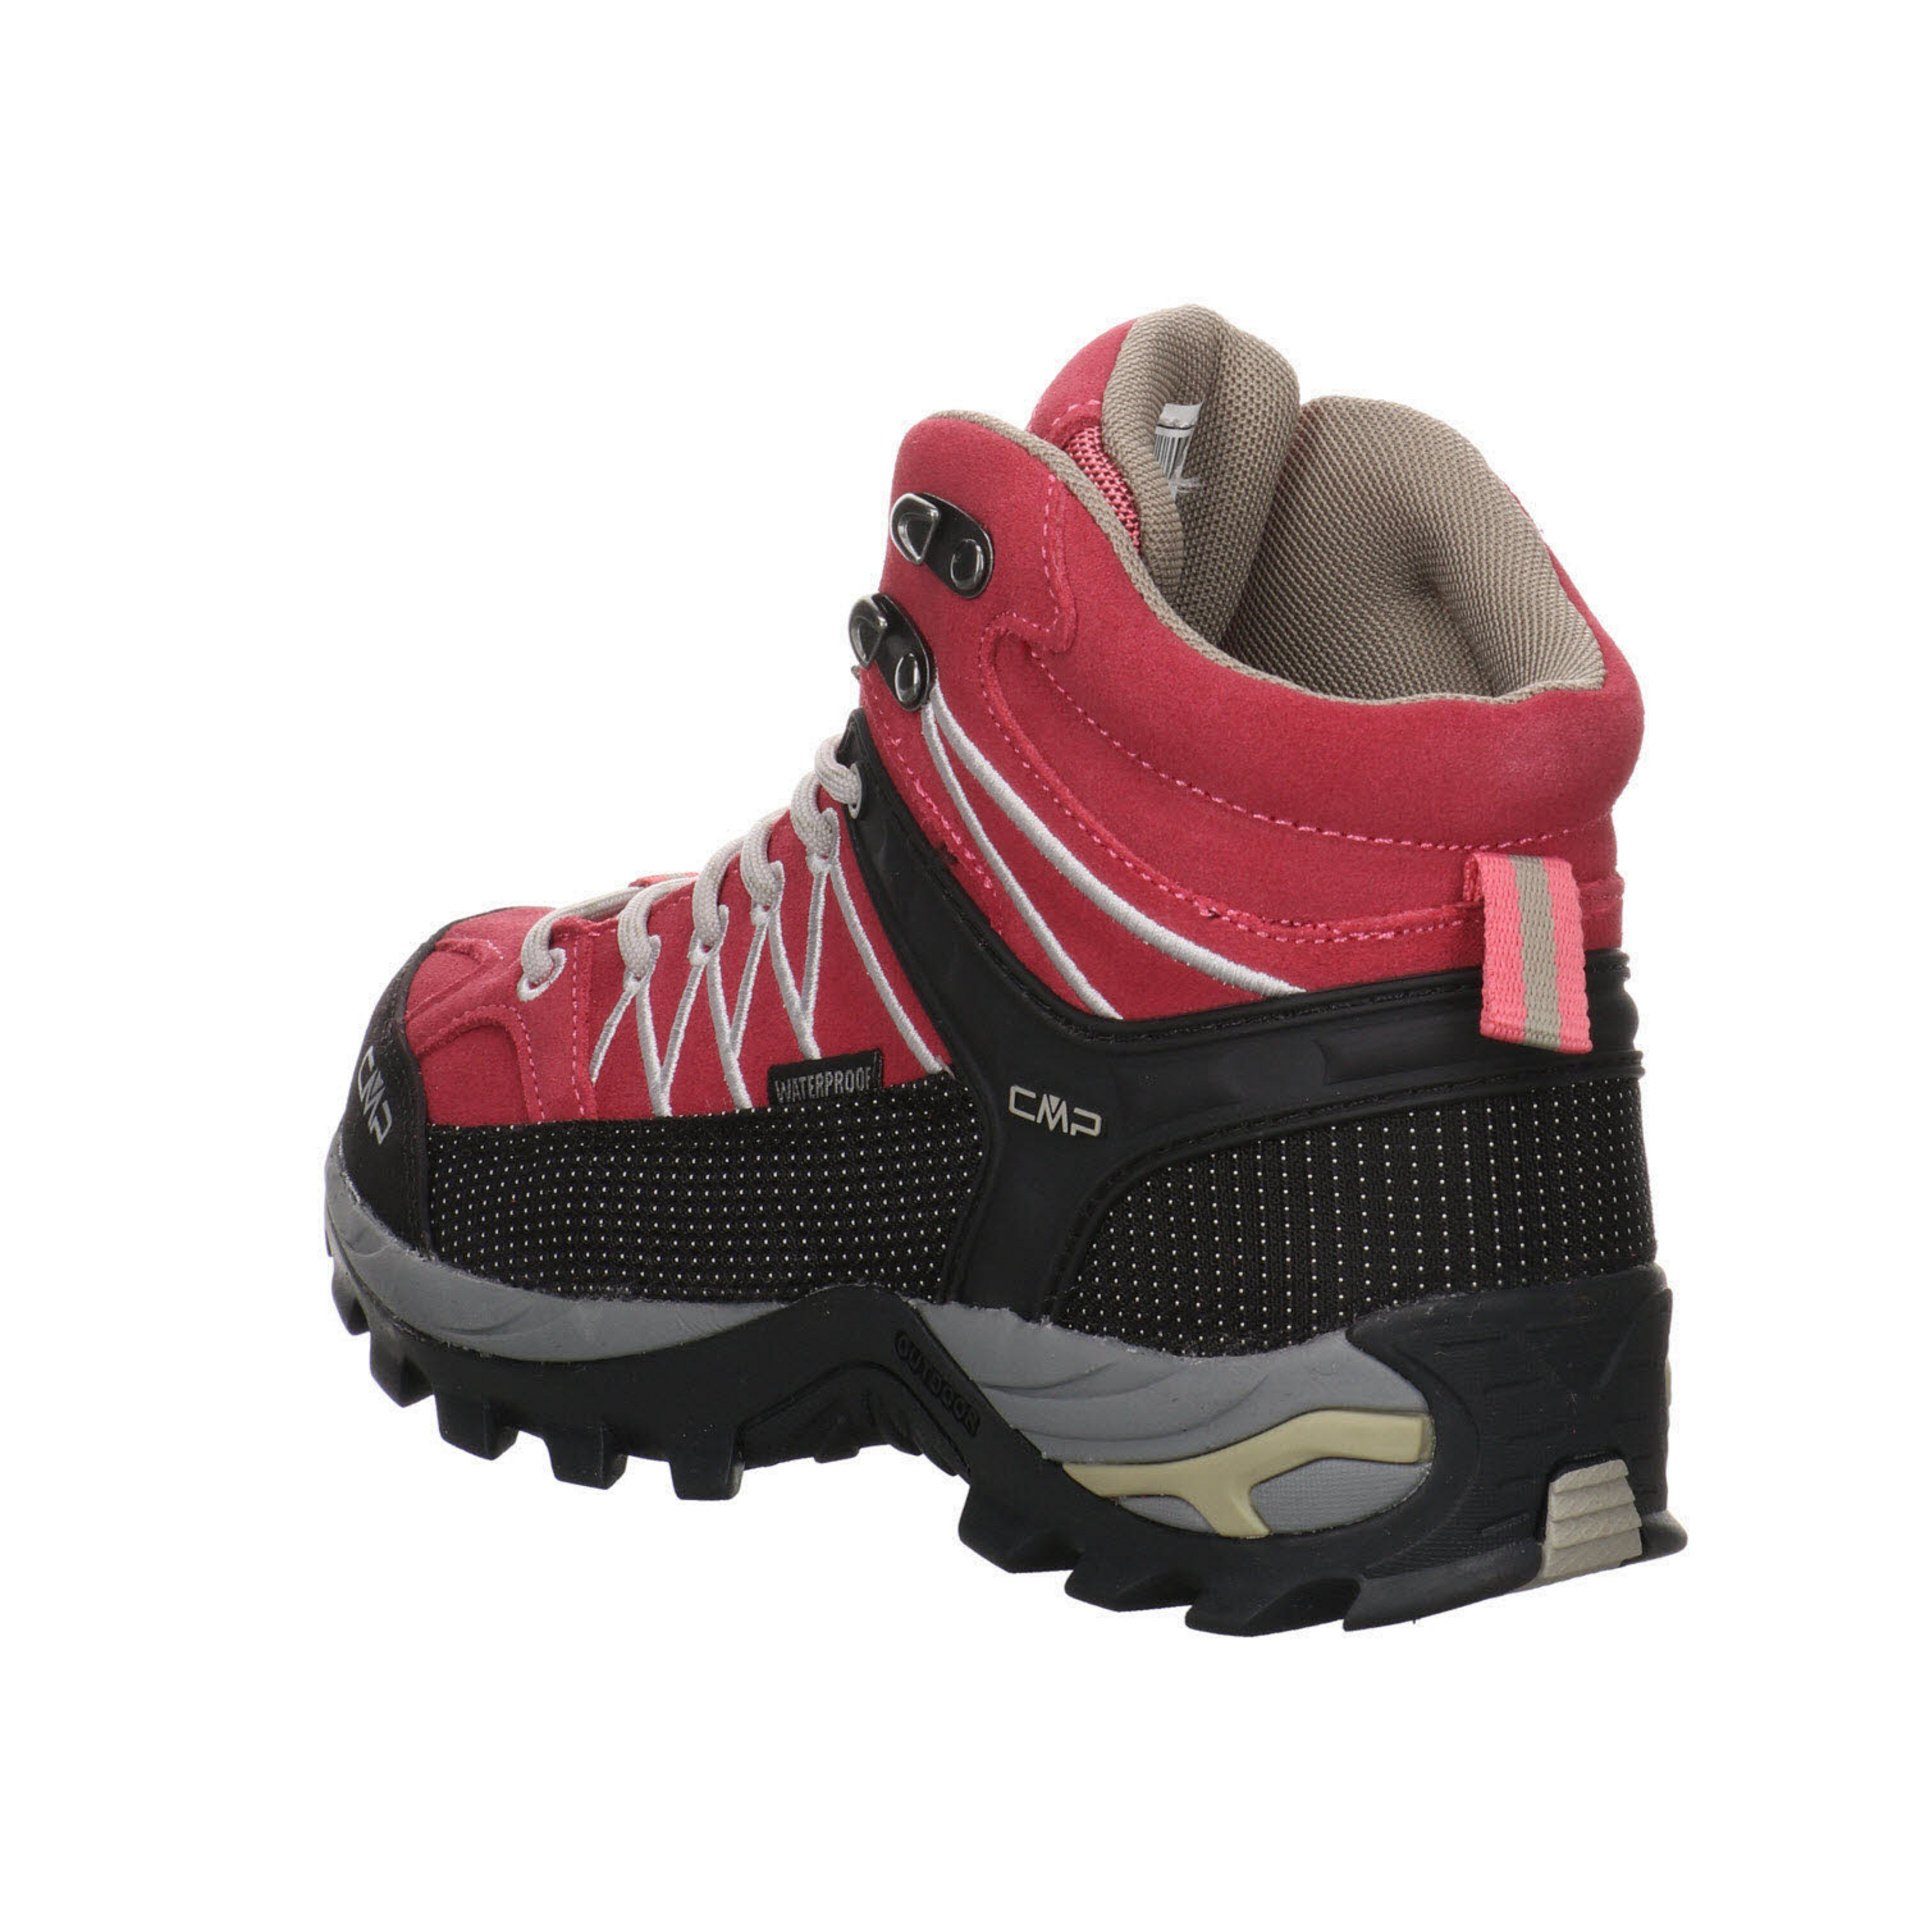 Outdoor Outdoorschuh Damen Leder-/Textilkombination CMP Mid Rigel Schuhe ROSE-SAND Outdoorschuh